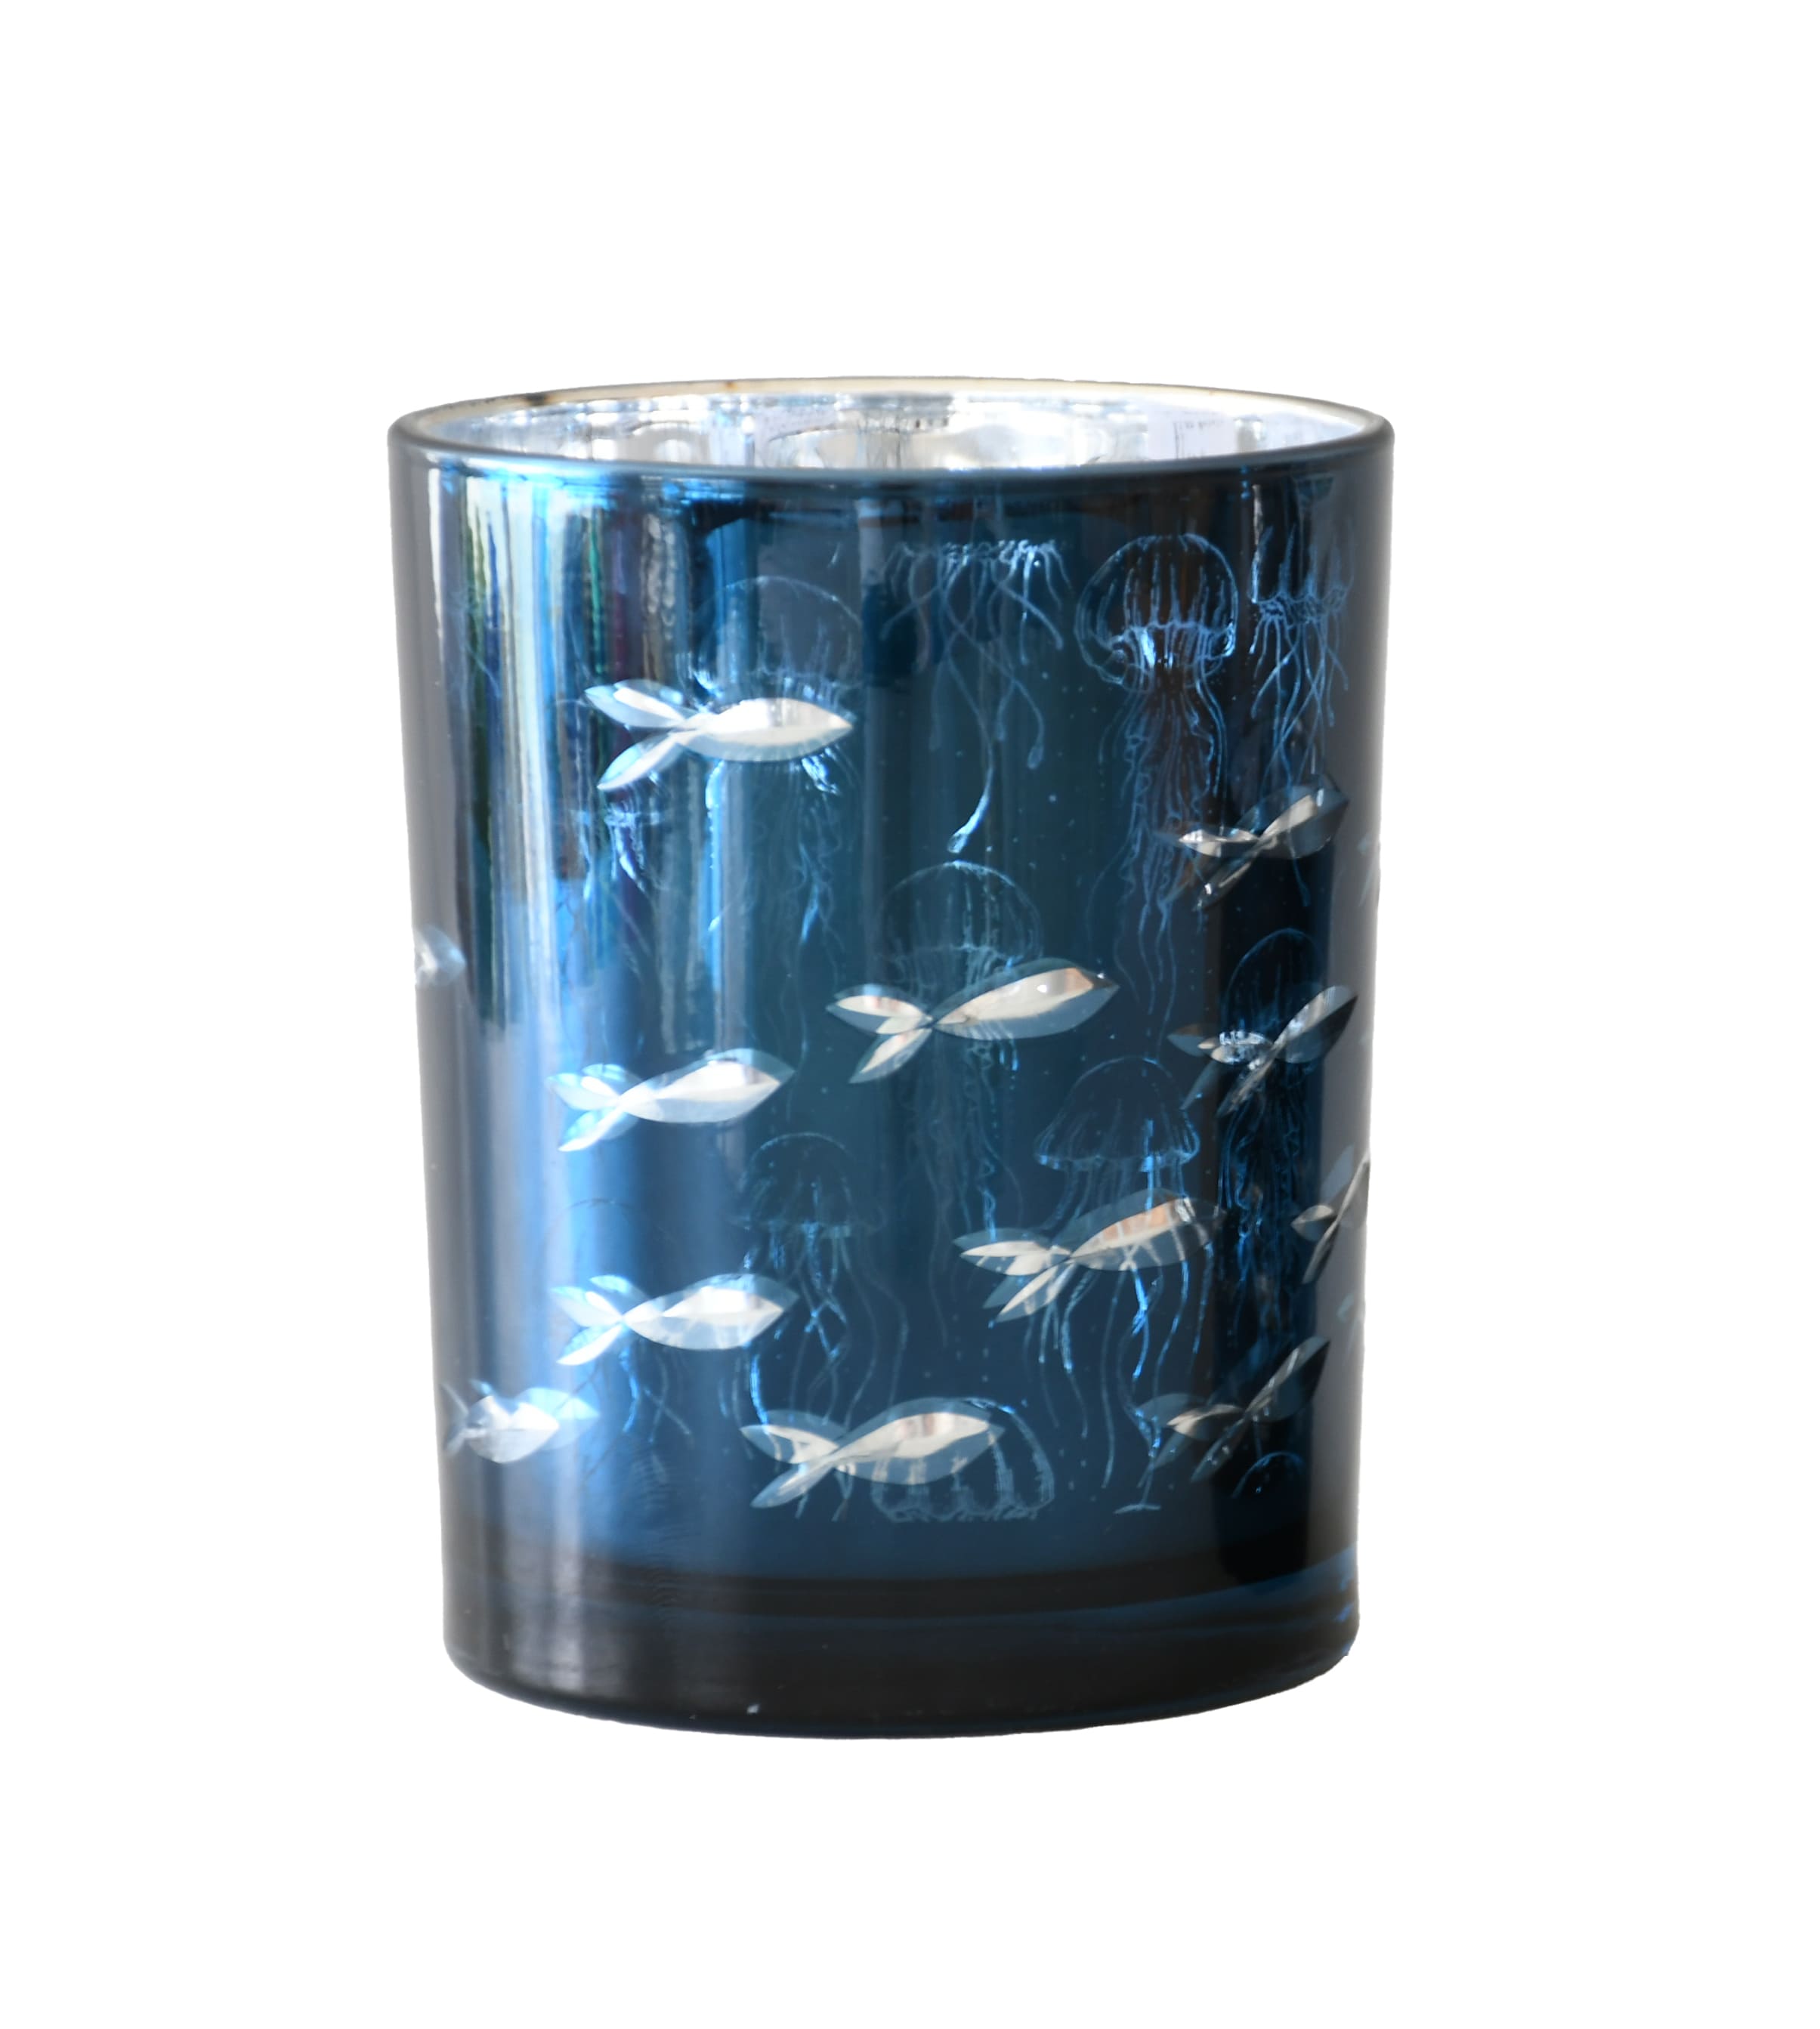 Votivlicht Glas blau metallic mit Fischschwarm D=10cm H=12,5cm